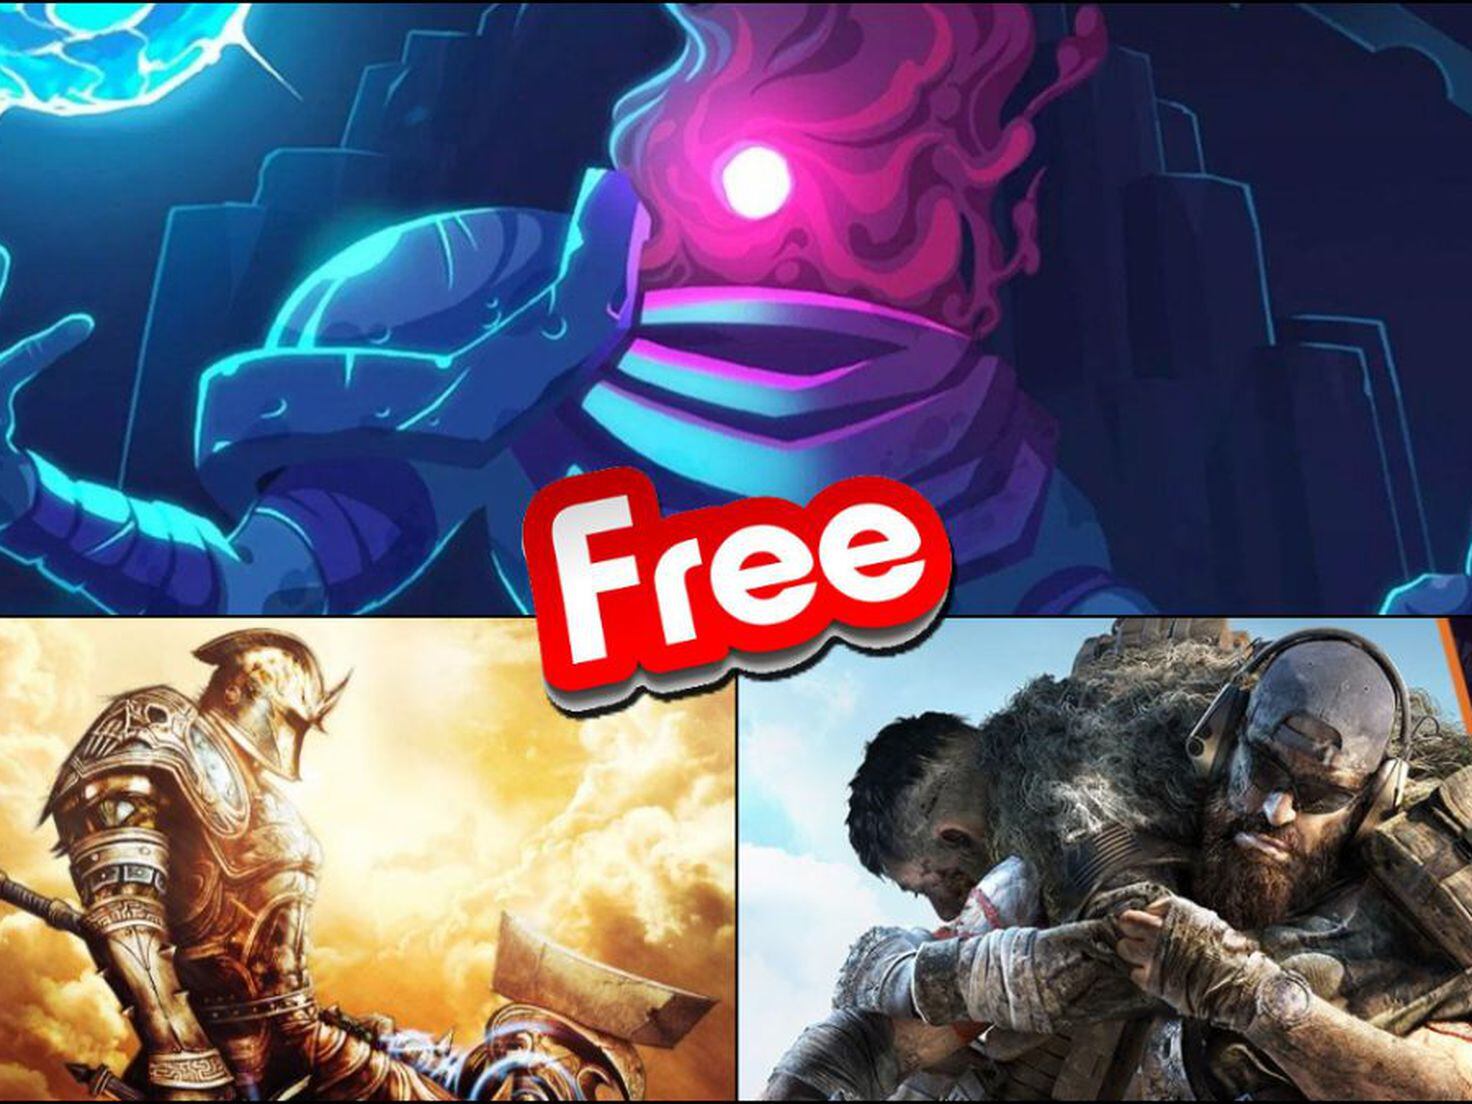 Los mejores juegos gratis de PC, Steam y más de 2021 - Meristation